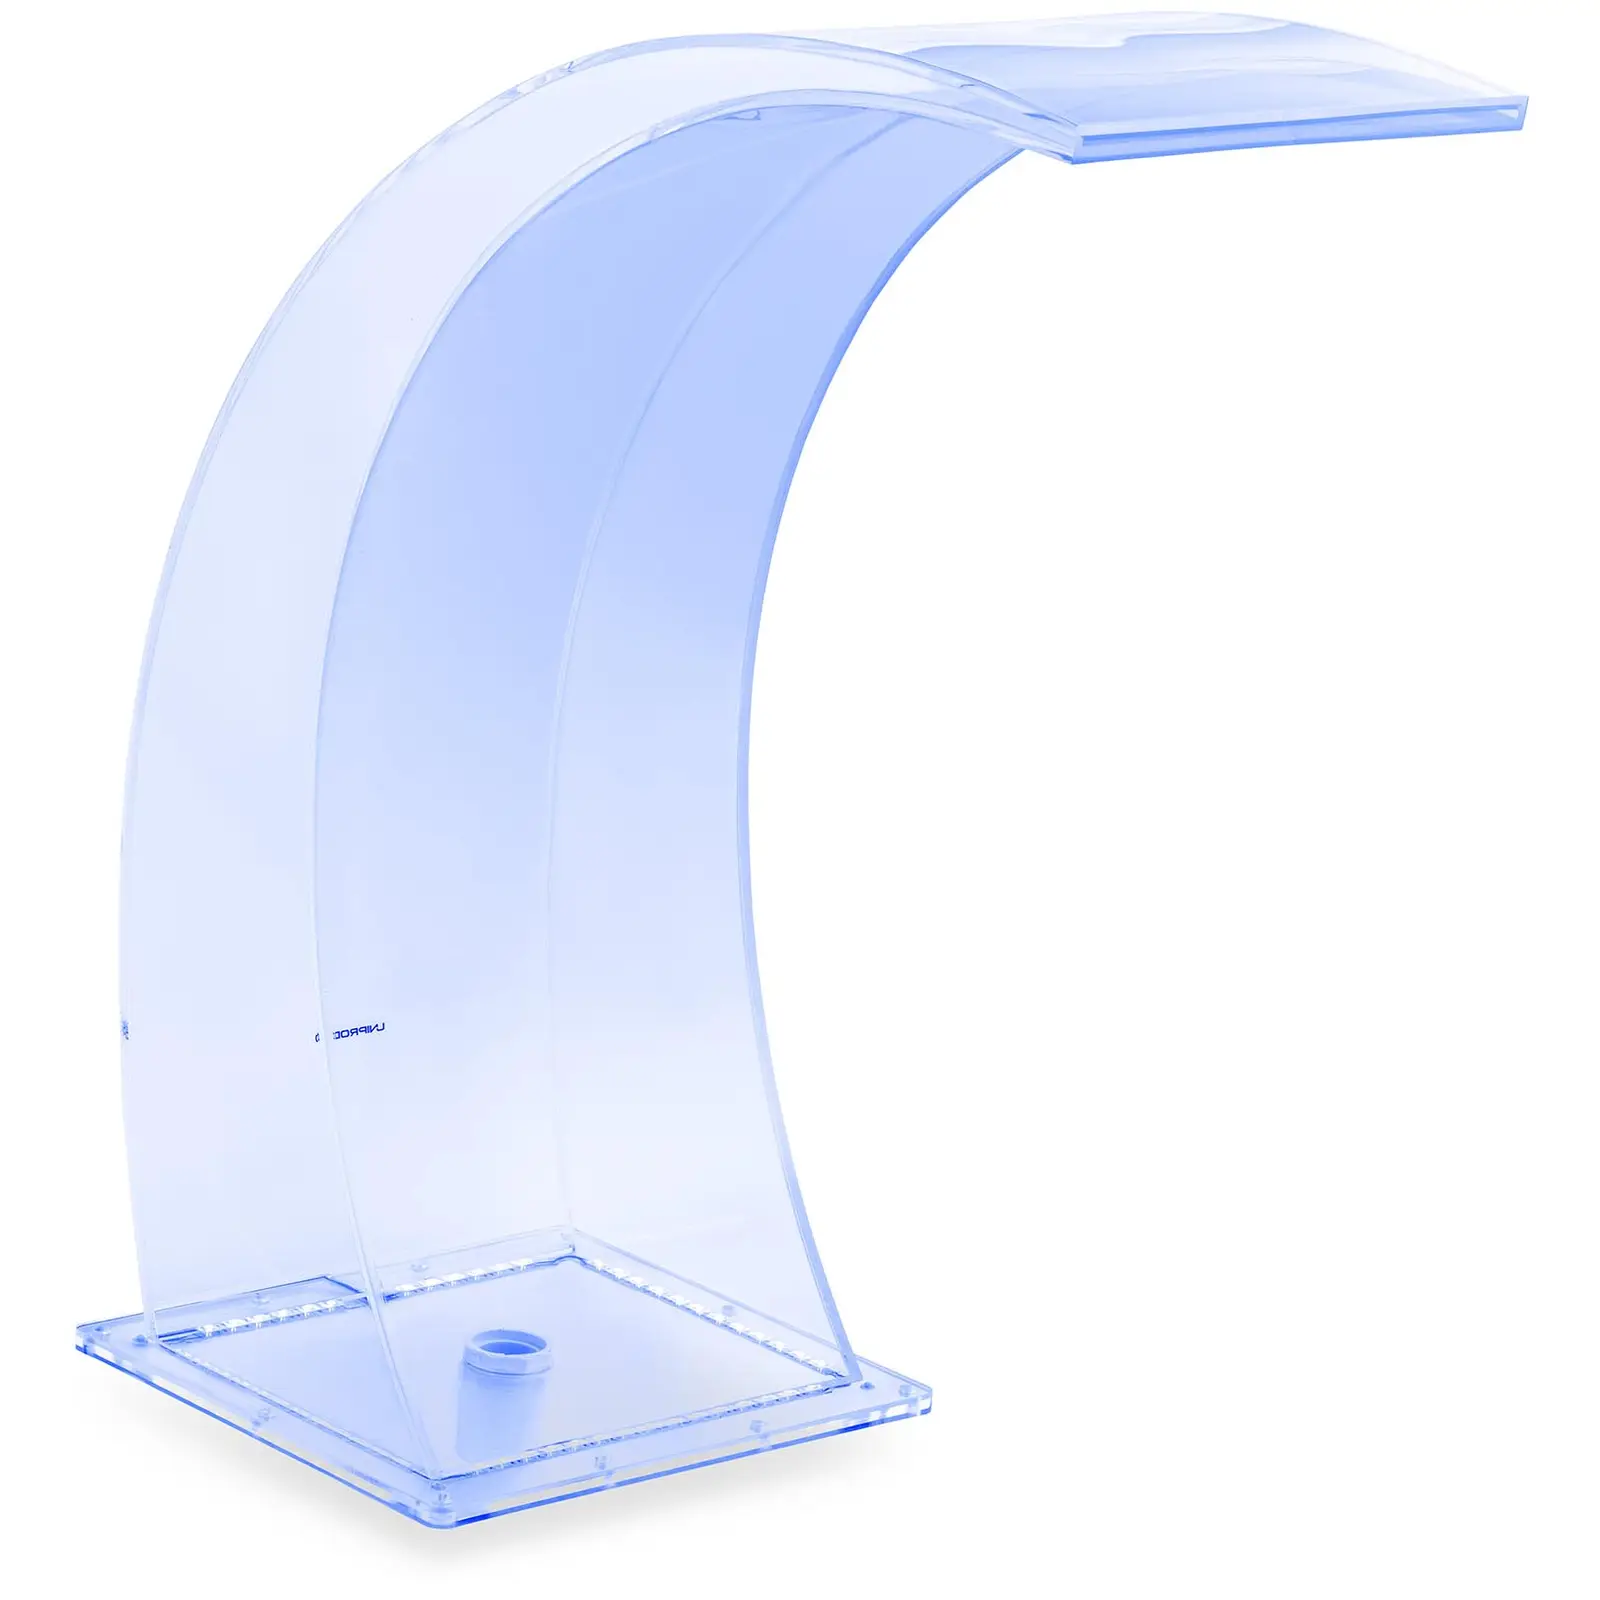 Schwalldusche - 35 cm - LED-Beleuchtung - Blau / Weiß - 303 mm Wasserauslauf